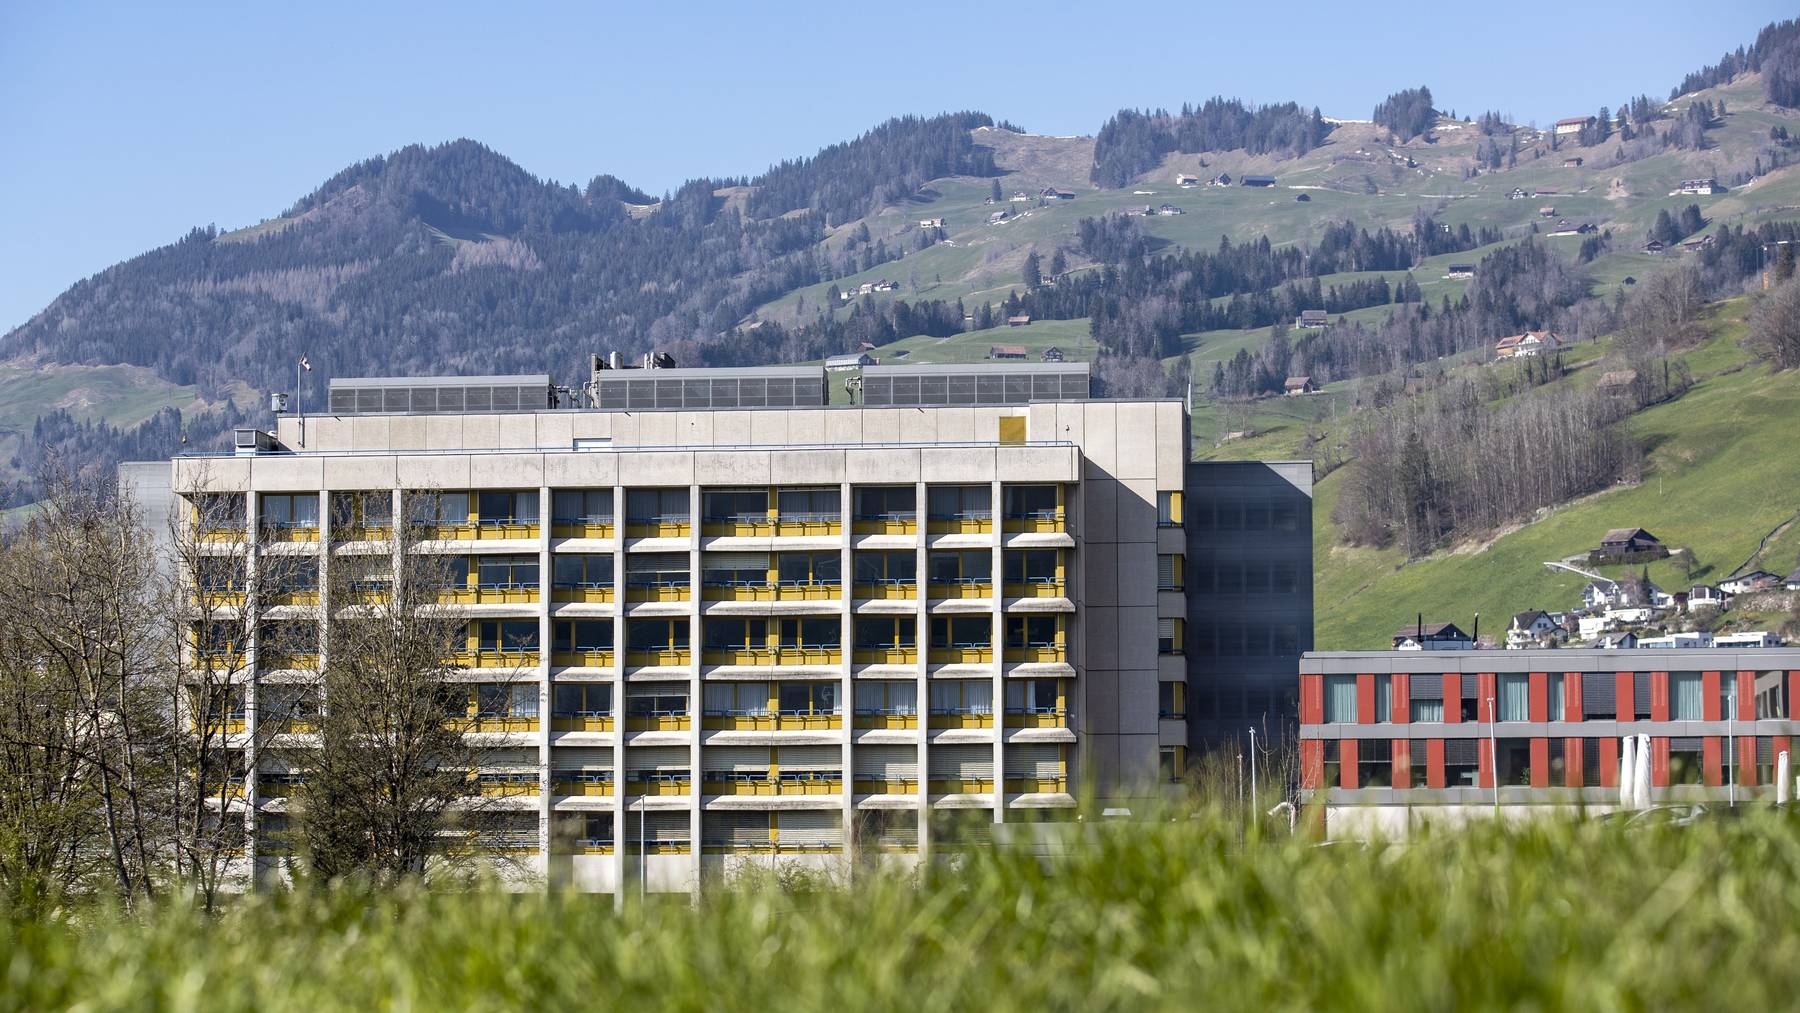 Ländliche Spitäler wie hier in Schwyz könnten unter Druck geraten, befürchten Gegner der Reform.